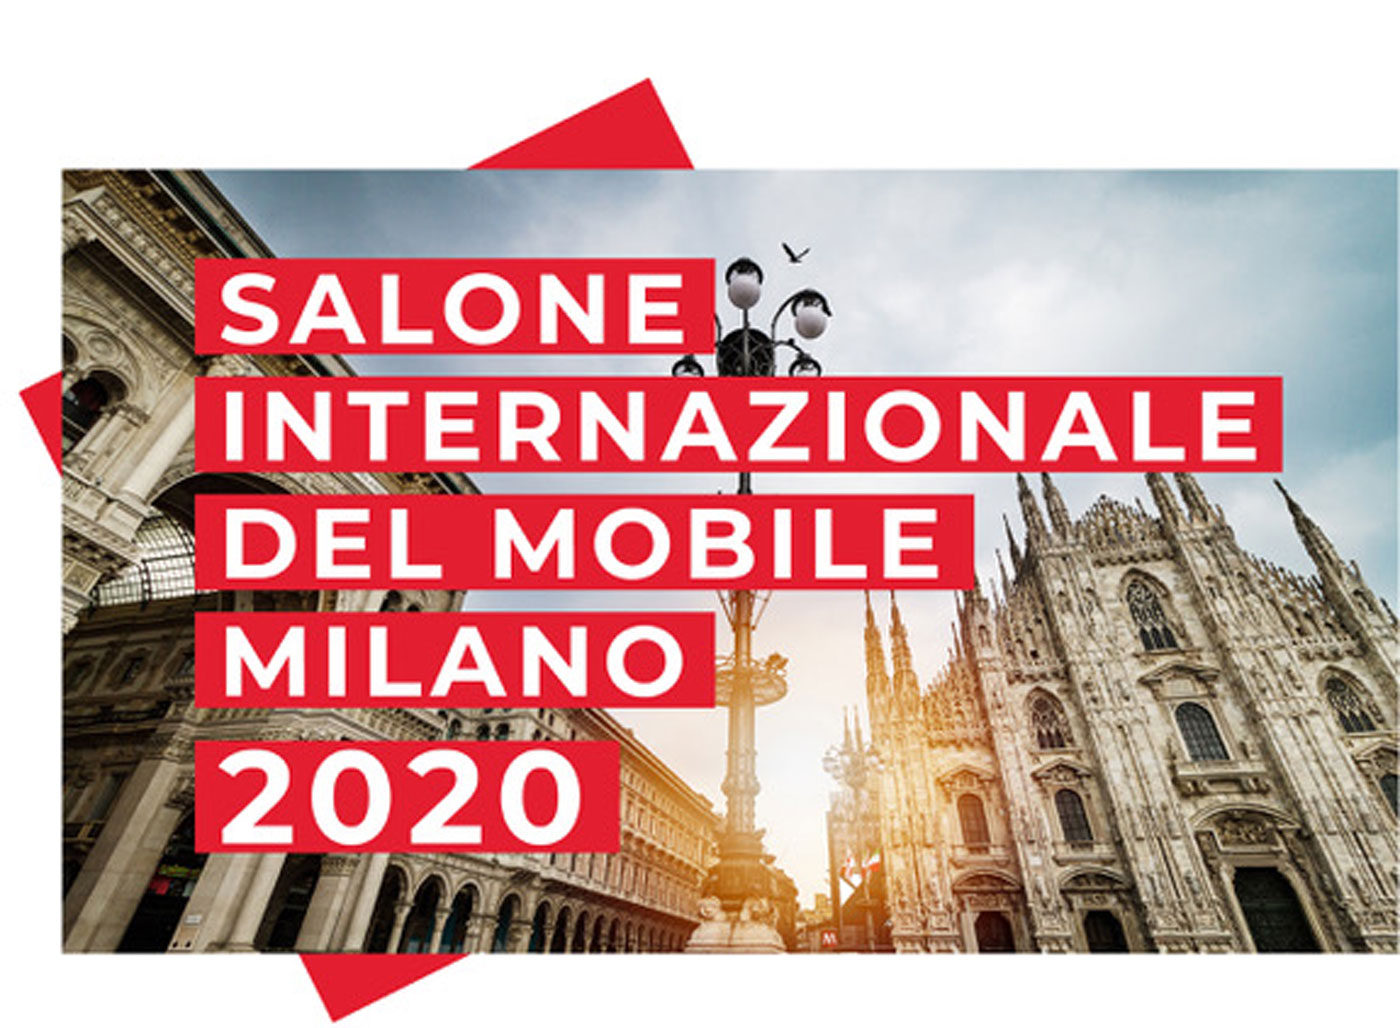 Salone Internazionale Del Mobile Milano 2020